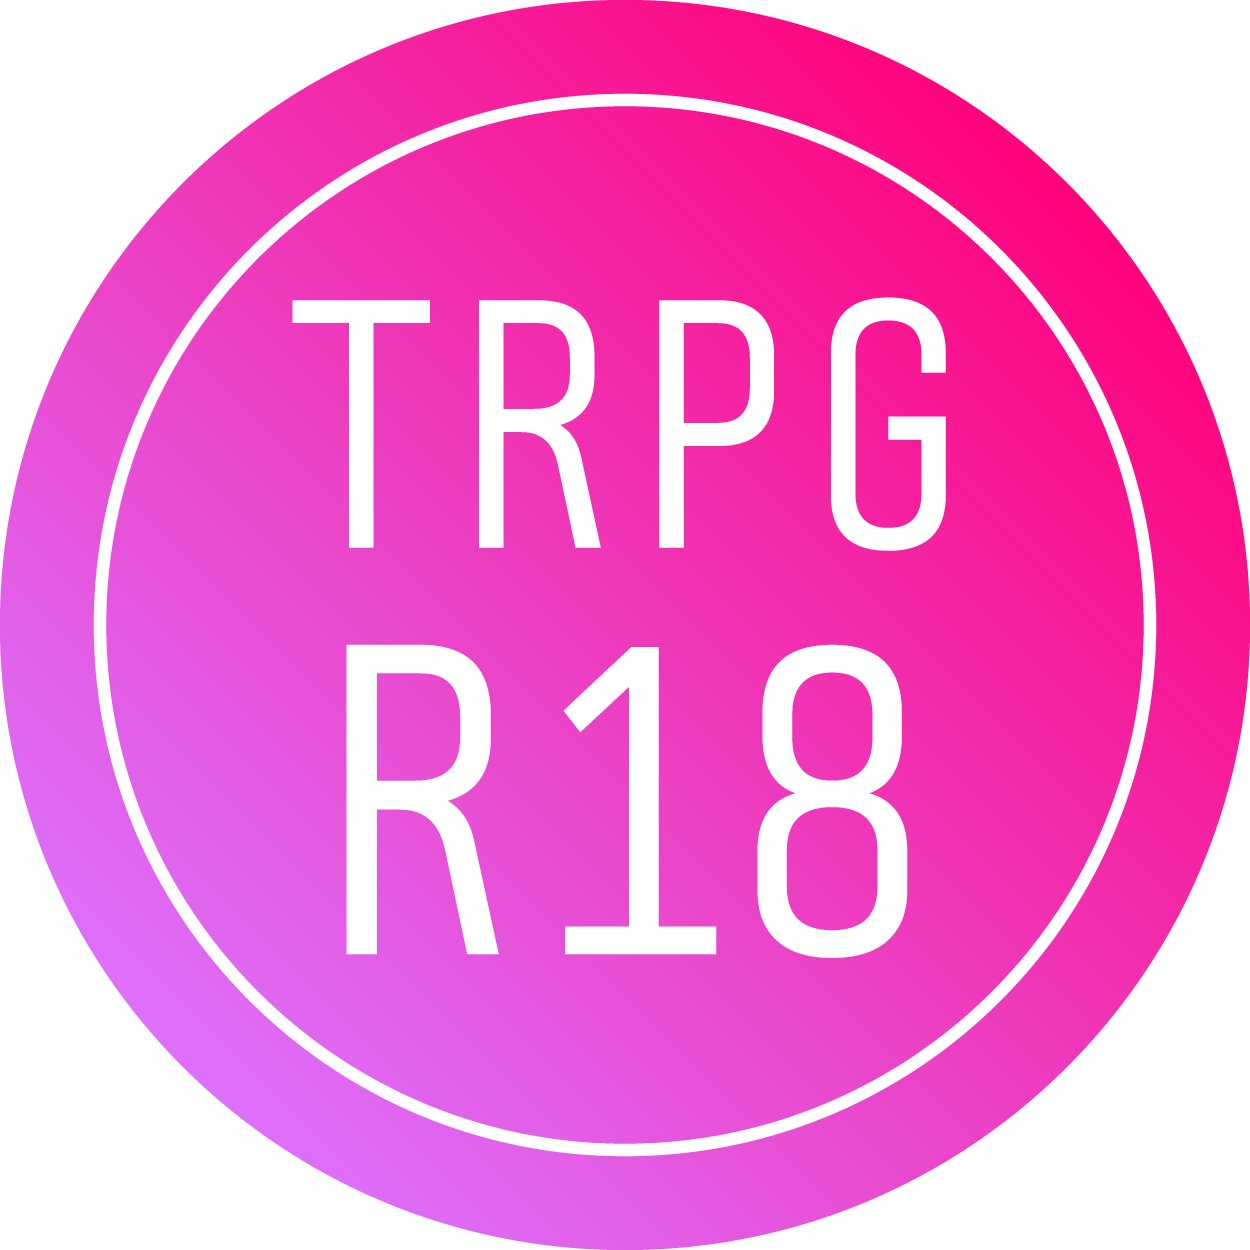 TRPG関連のR18/R18G壁打ち用アカウントです。＠TRPG_R18宛にリプライで呟くと、このアカウントをフォローしている人にだけツイートが見えるようになります。
あまりに過激で直接的な表現や、シナリオ等のネタバレに繋がる内容はPrivetterなどと併用し、周囲の方への配慮に努めていただきますようお願い致します。